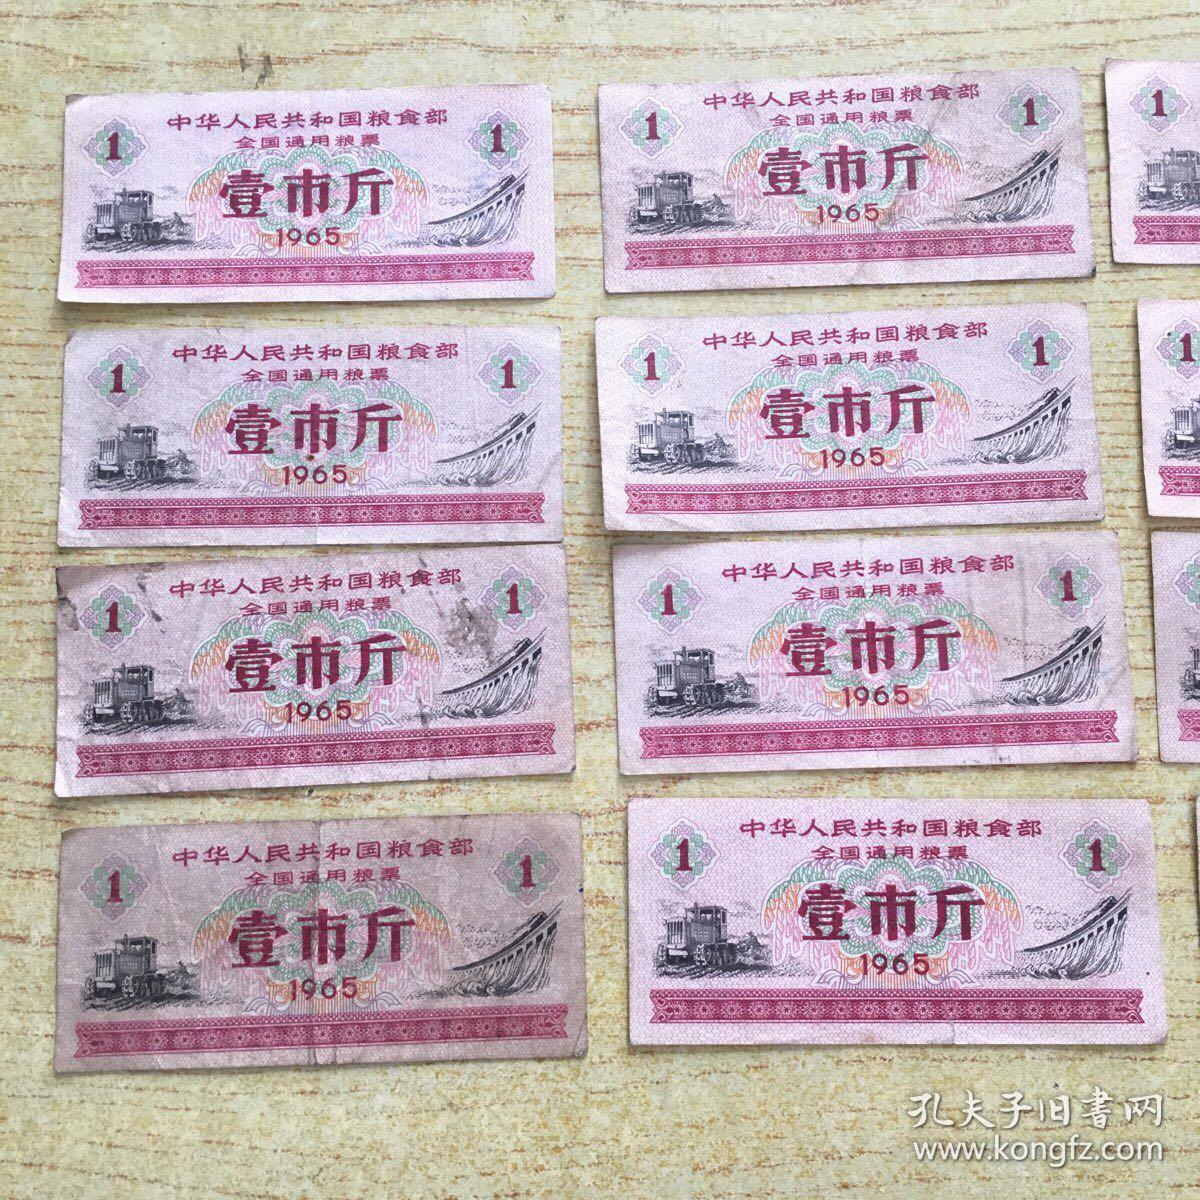 中华人民共和国粮食部全国通用粮票 壹市斤1965年.20张**e**【N--2】